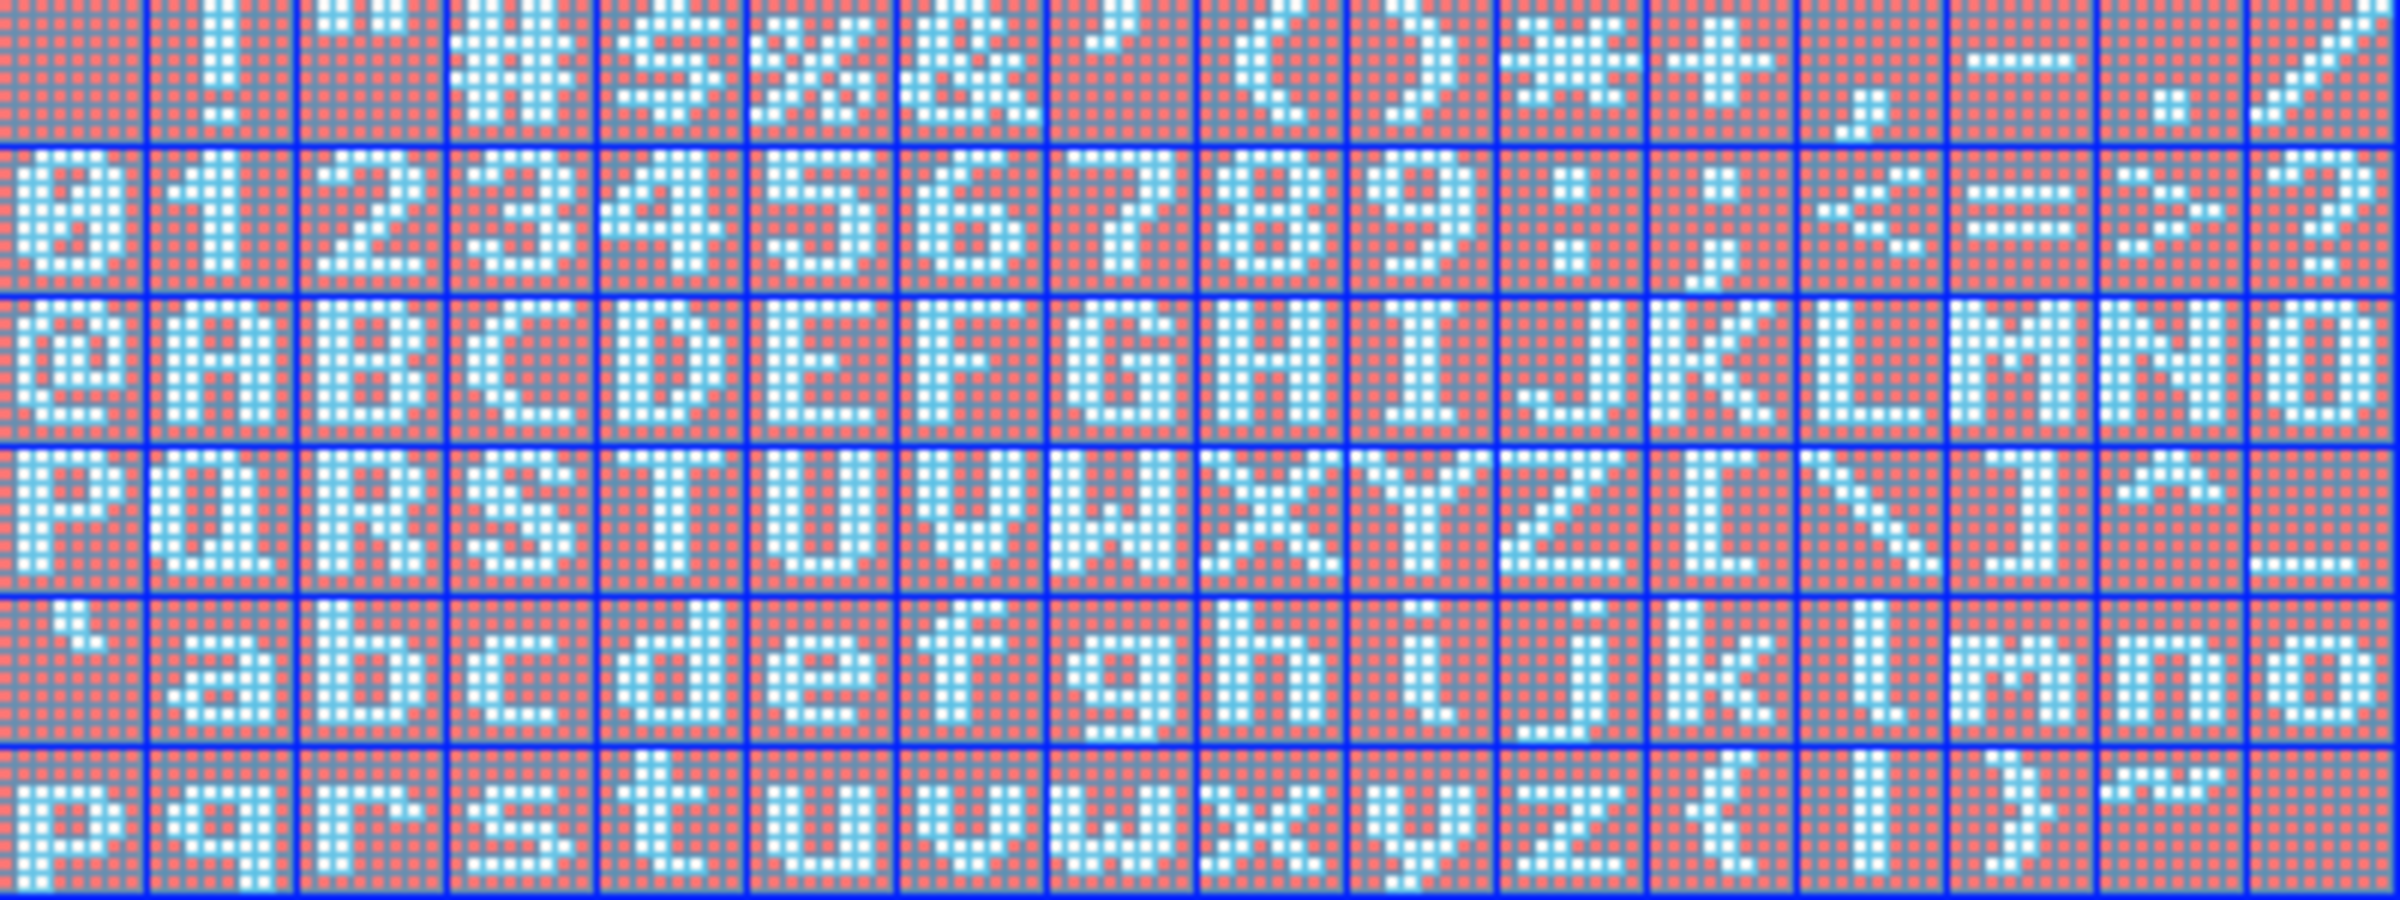 Пиксель 8 а. Монтажная сетка пиксели. Пиксельная восемь. Цифра 8 по пикселям. Пиксельная восьмерка.